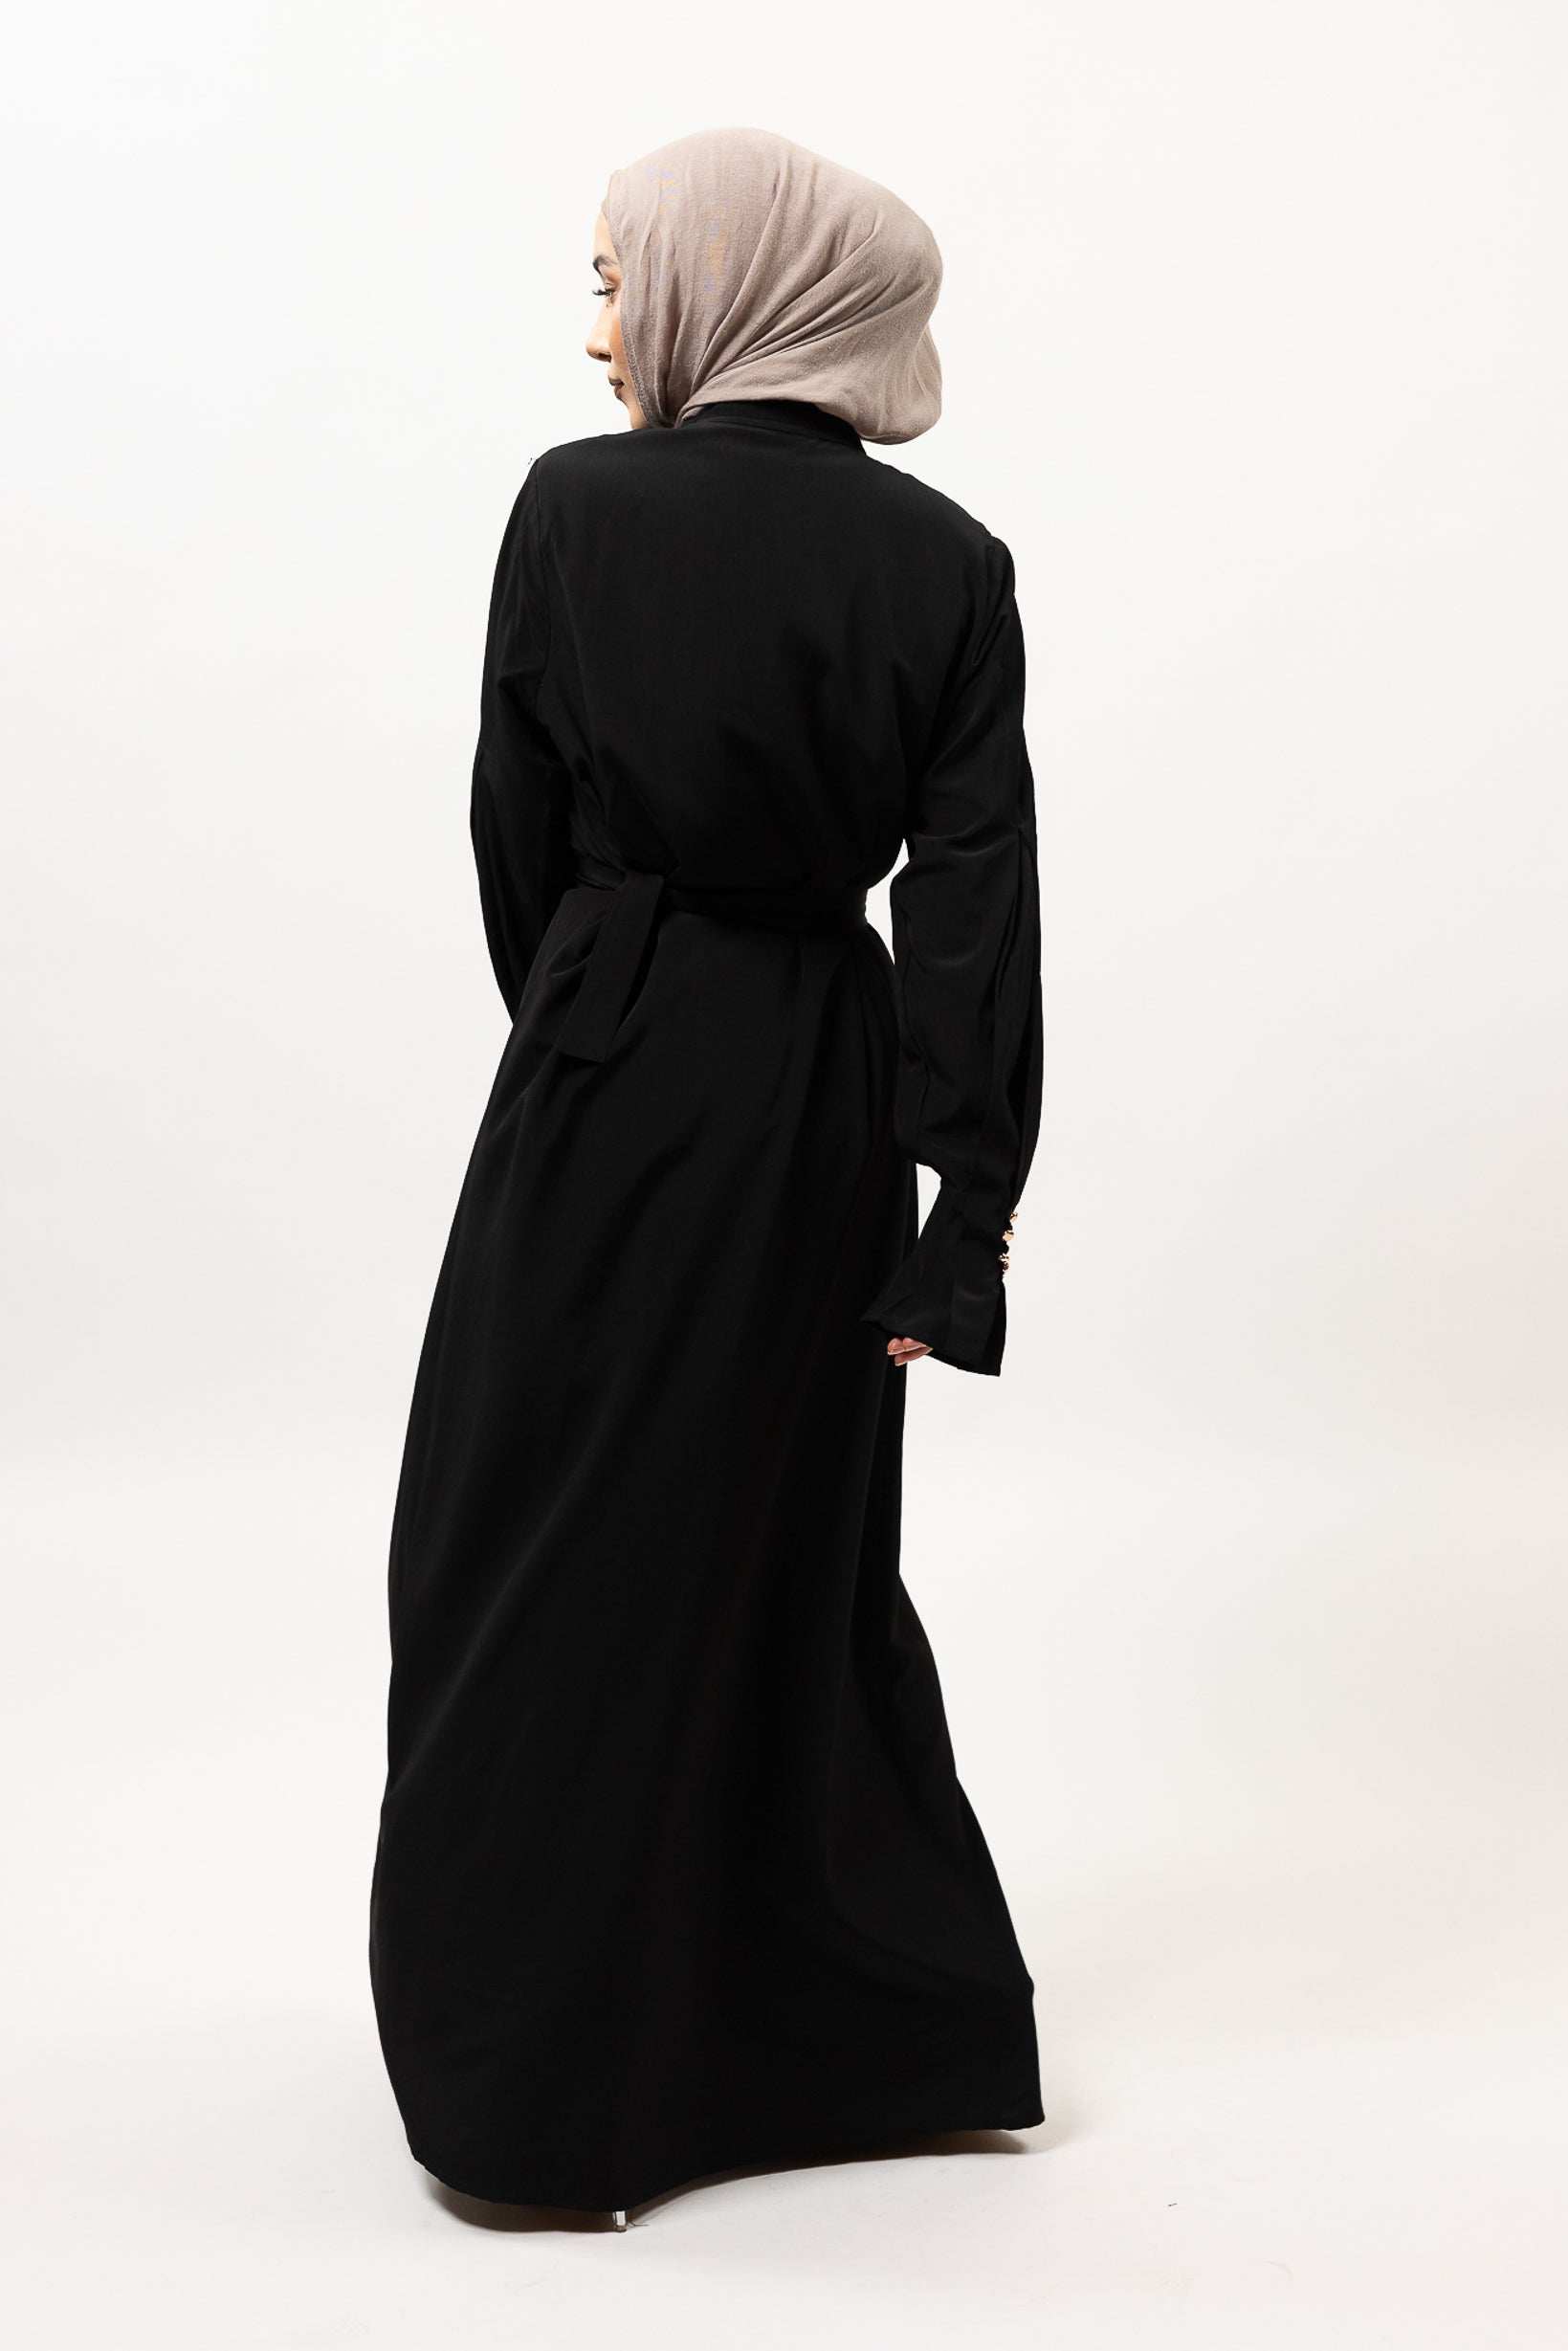 M8278Black-dress-abaya